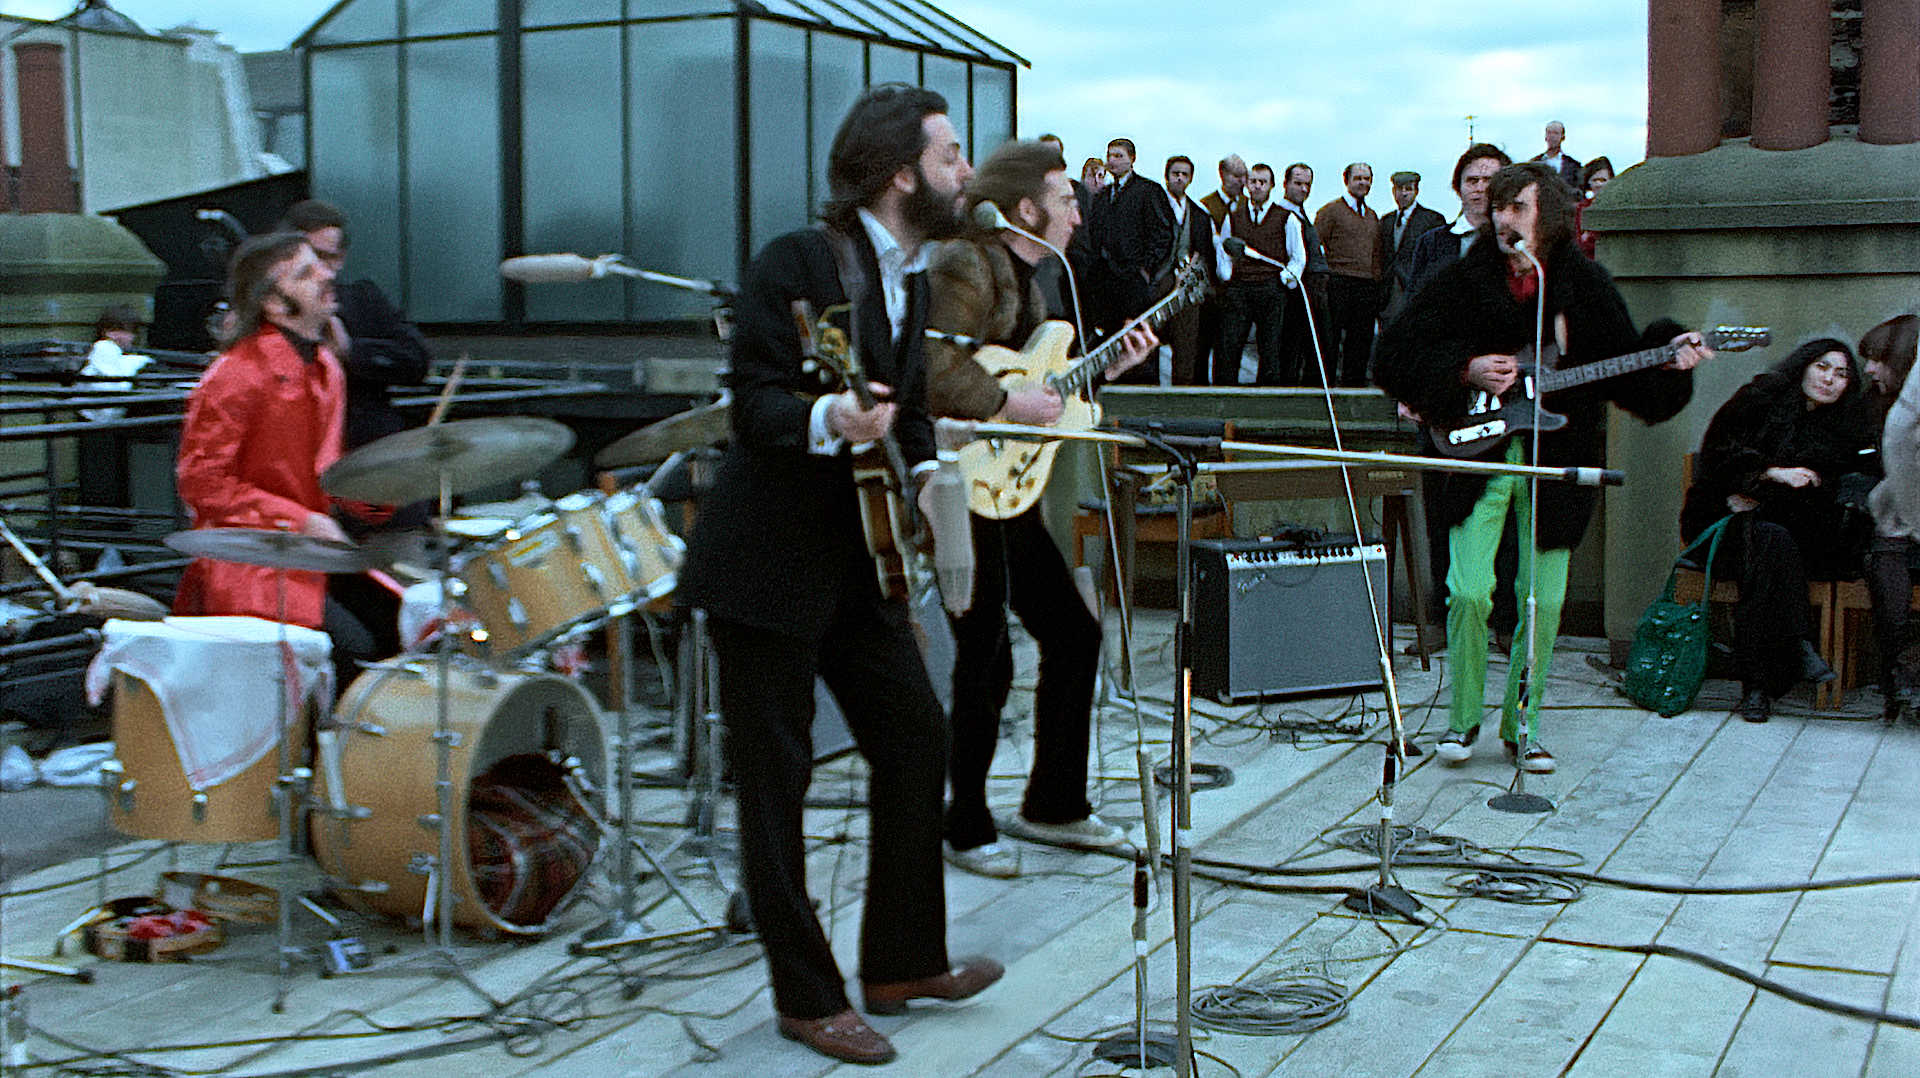 Avec le livre The Beatles : Get Back, embarquez à bord des sessions  rigolardes et fertiles des Fab Four de 1969